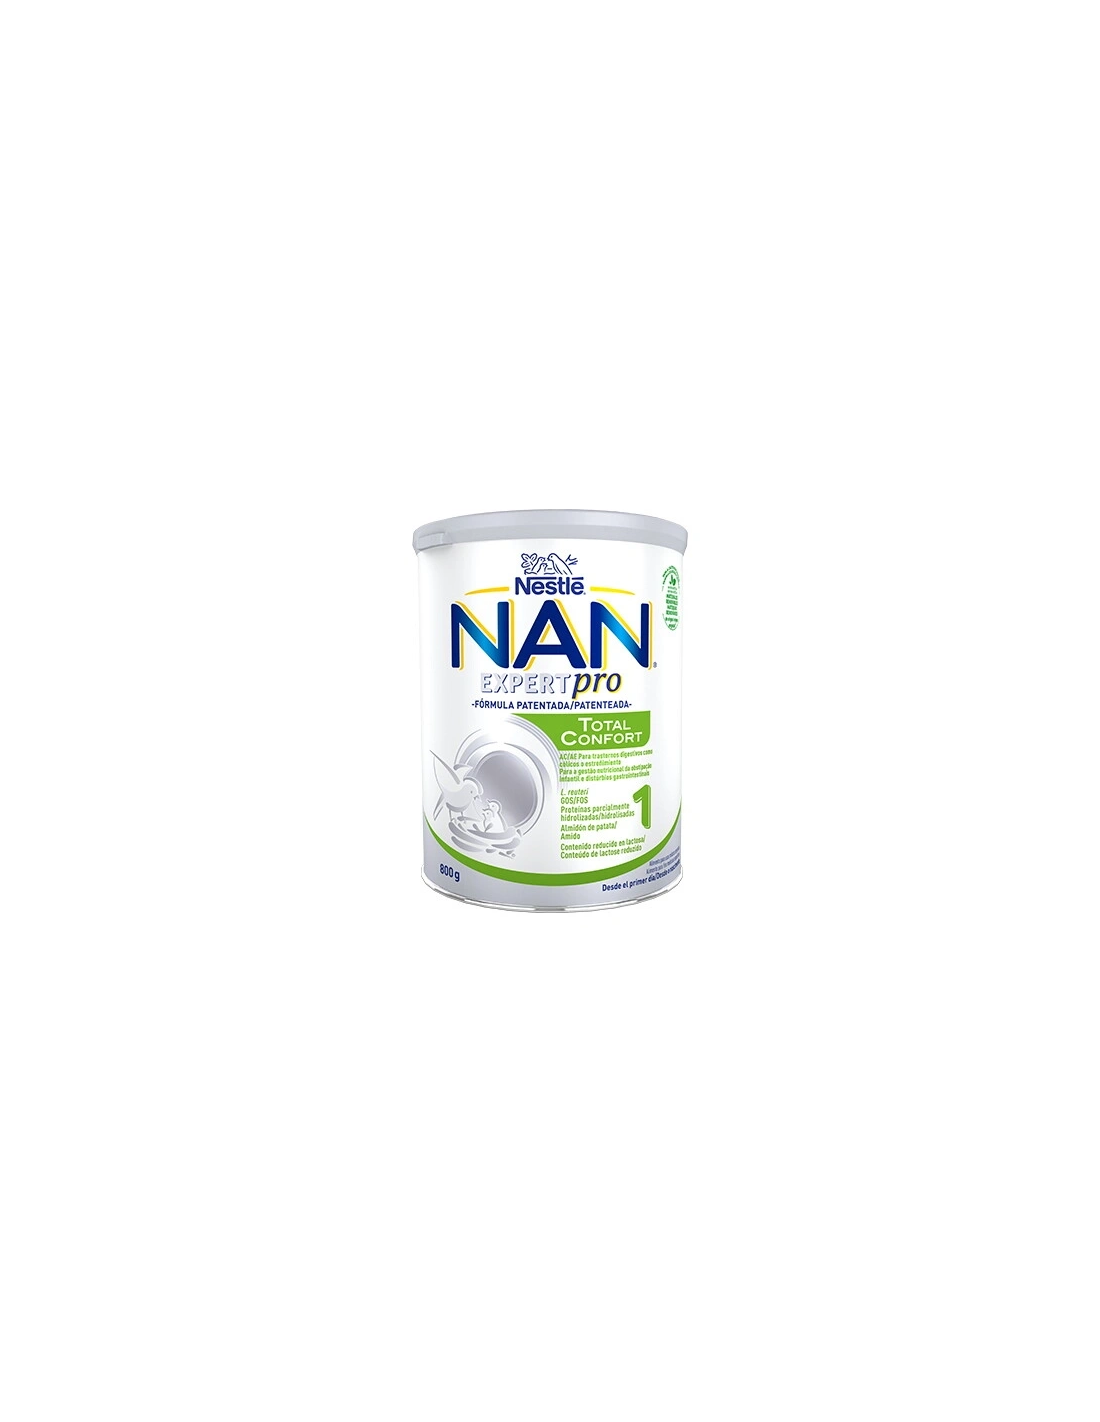 NAN Expertpro 1 Total Confort- 800g : : Productos para